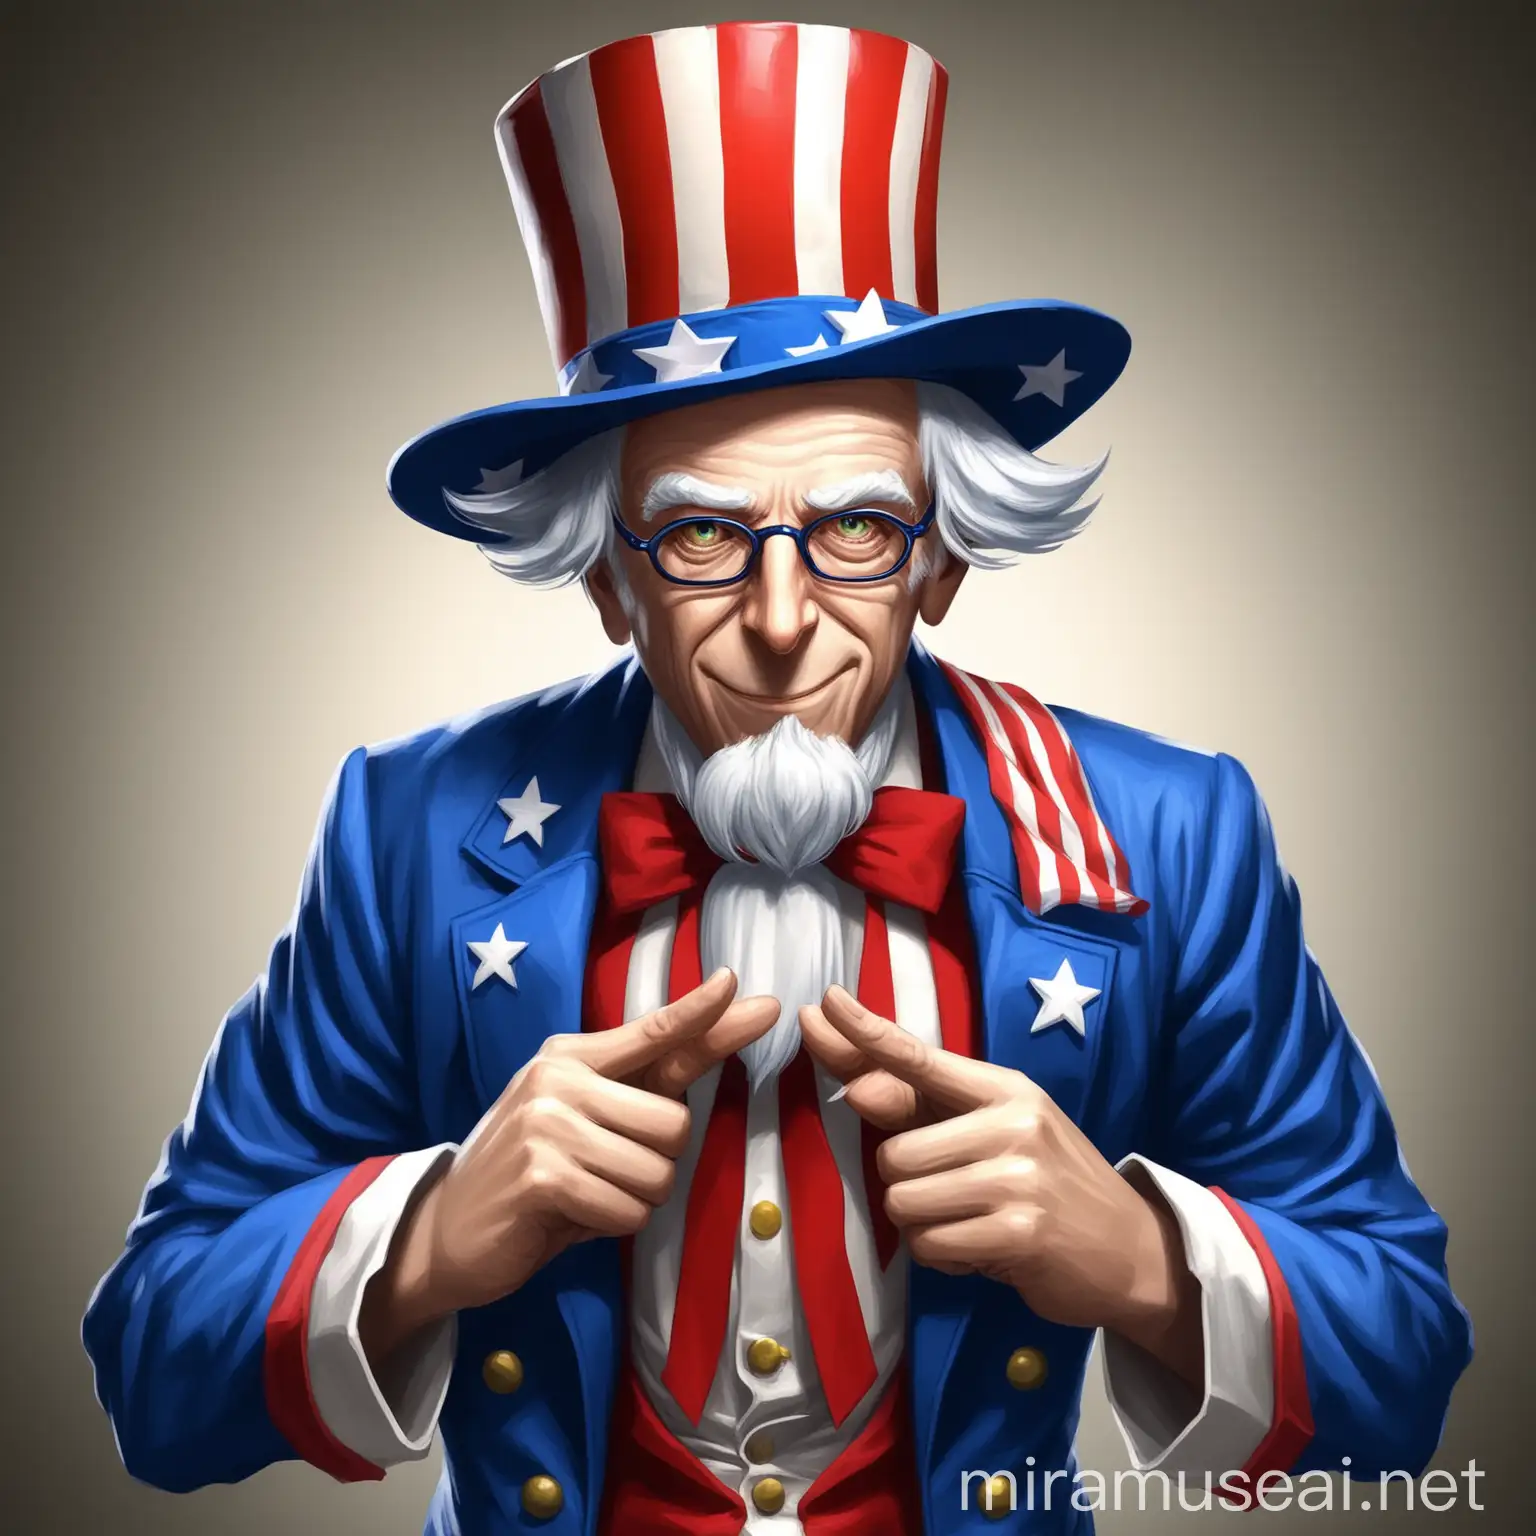 Boy Dressed as Uncle Sam in Patriotic Costume